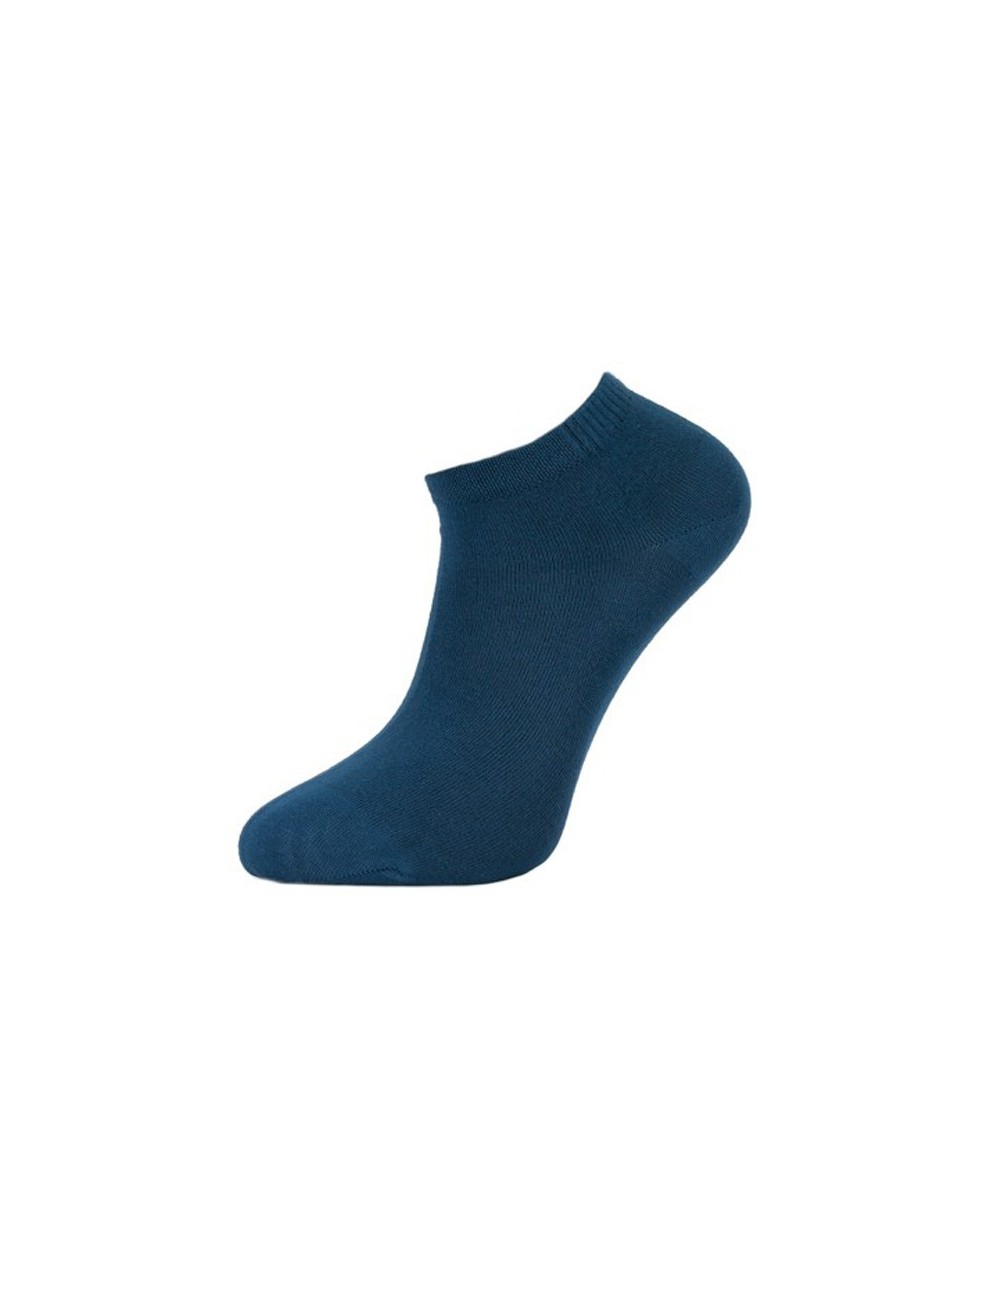 Χαμηλές παιδικές κάλτσες σοσόνι από Micromodal